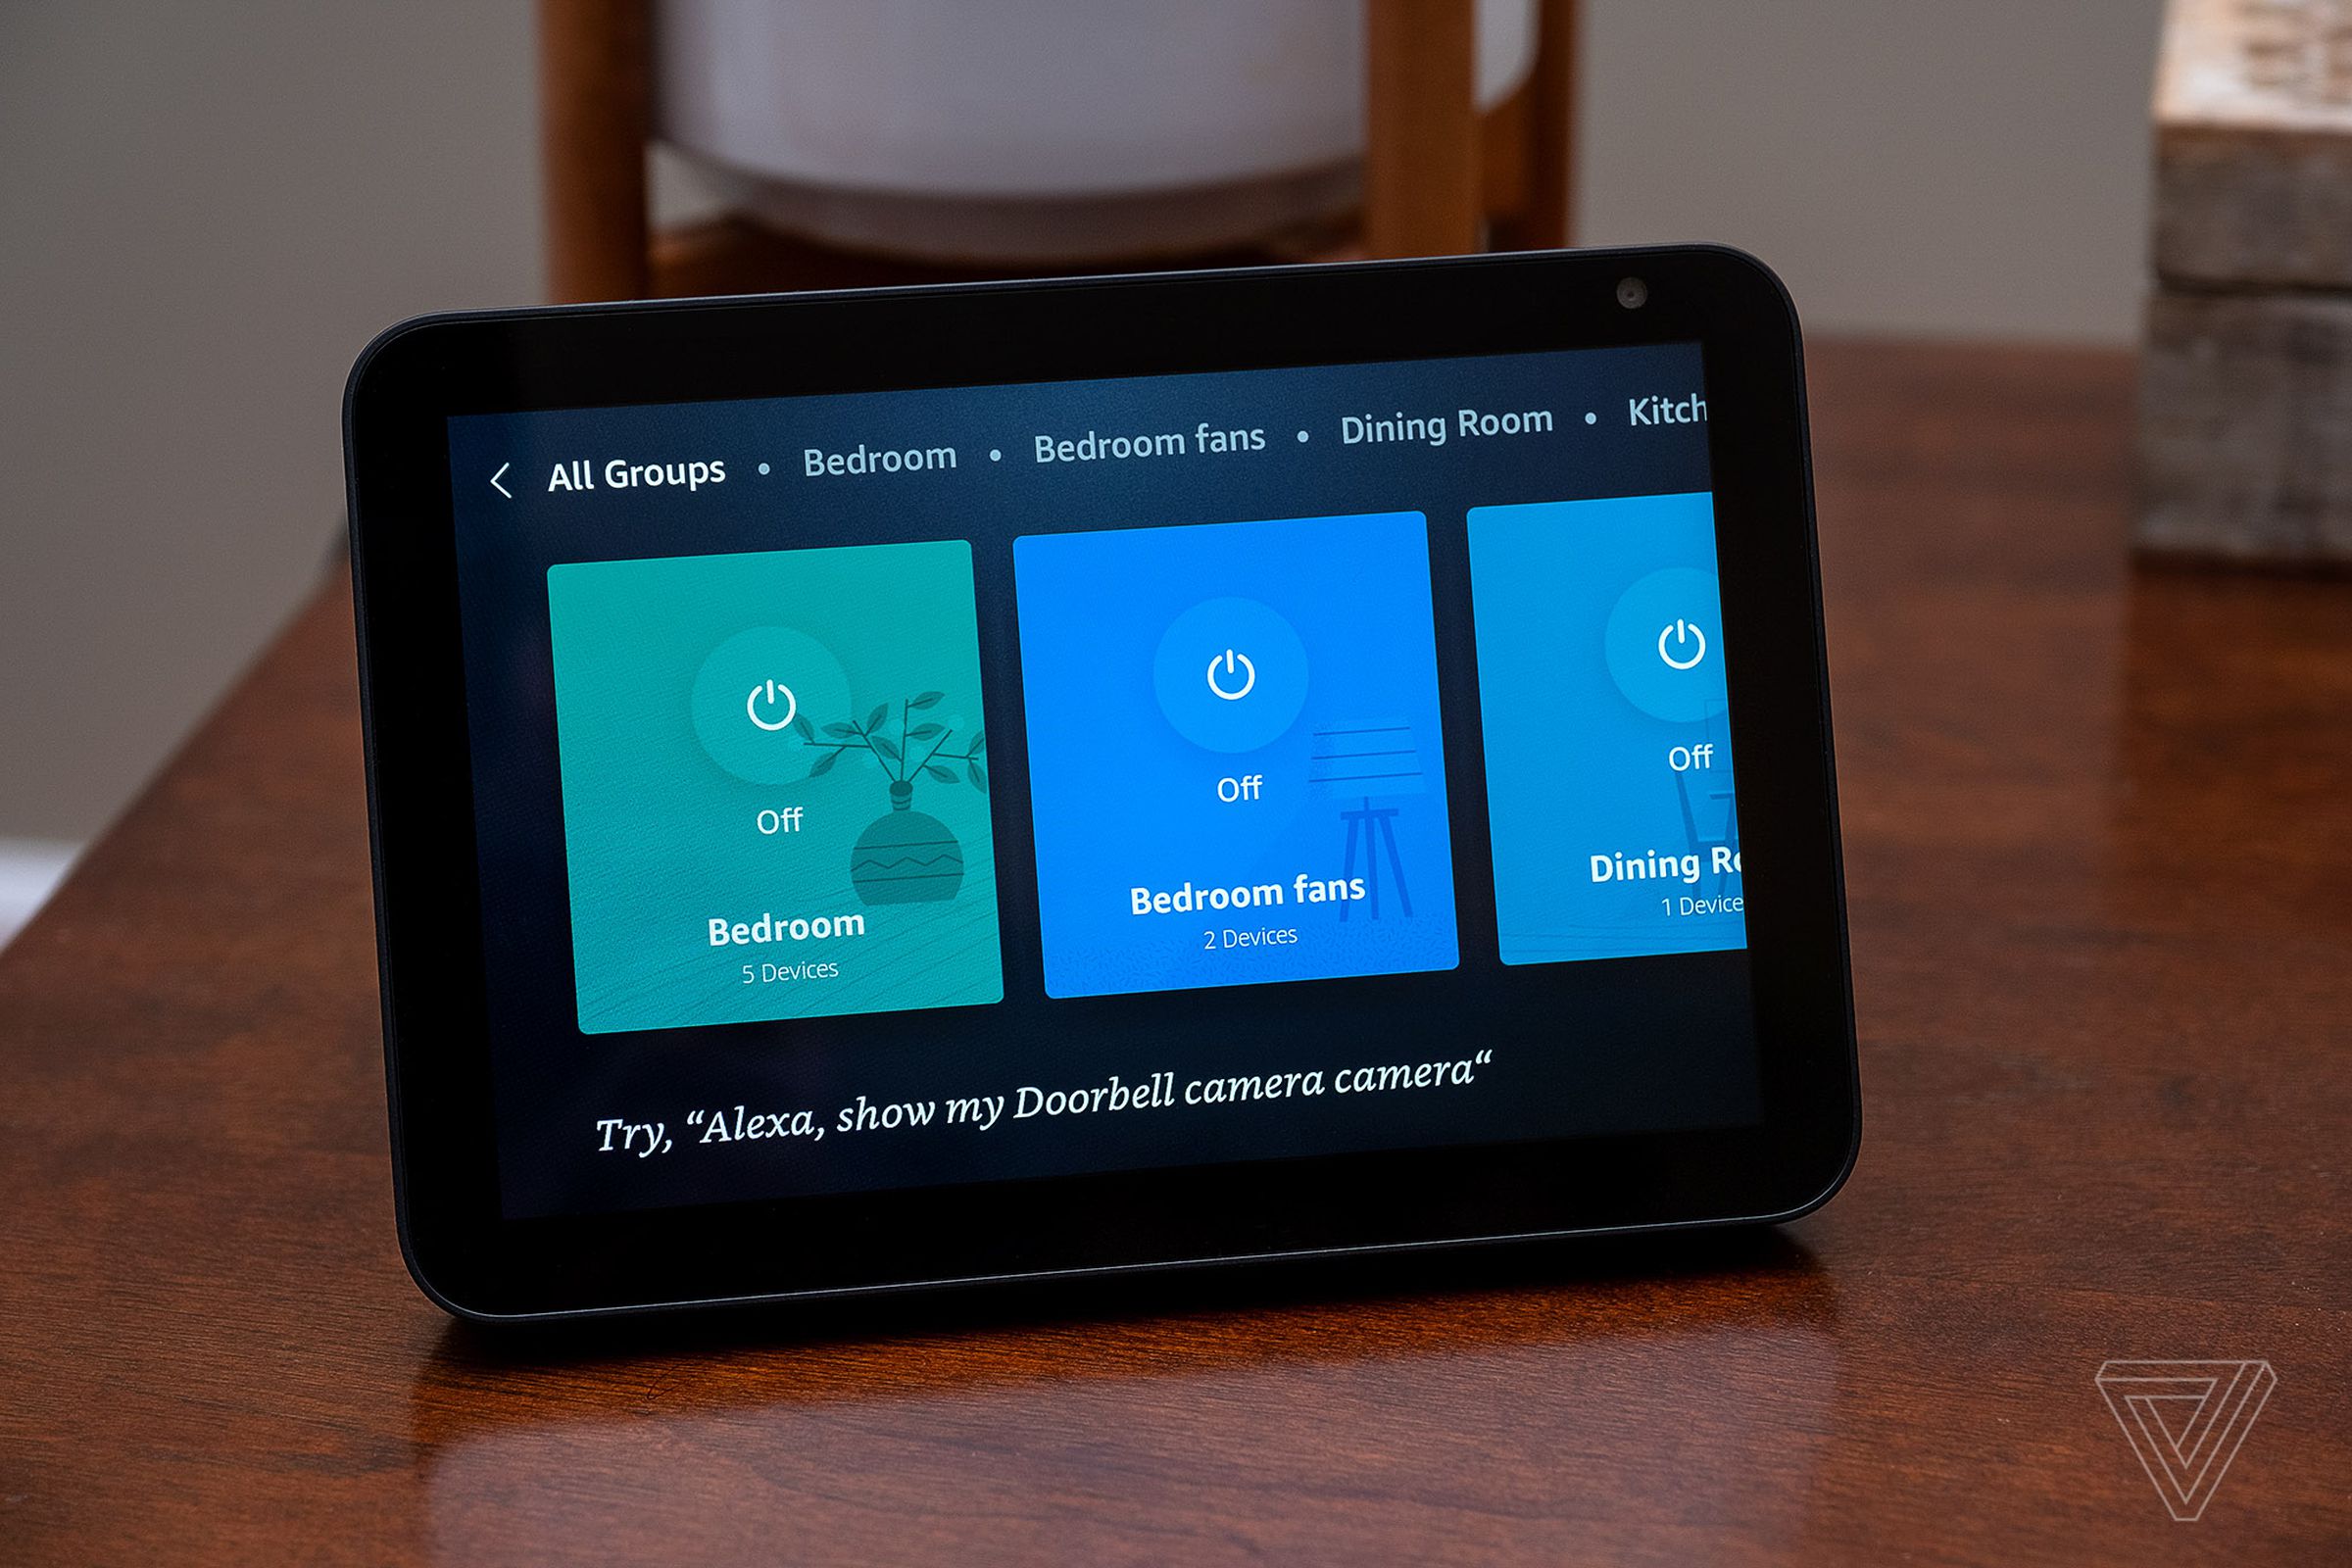 Amazon’s Echo Show 8 smart display